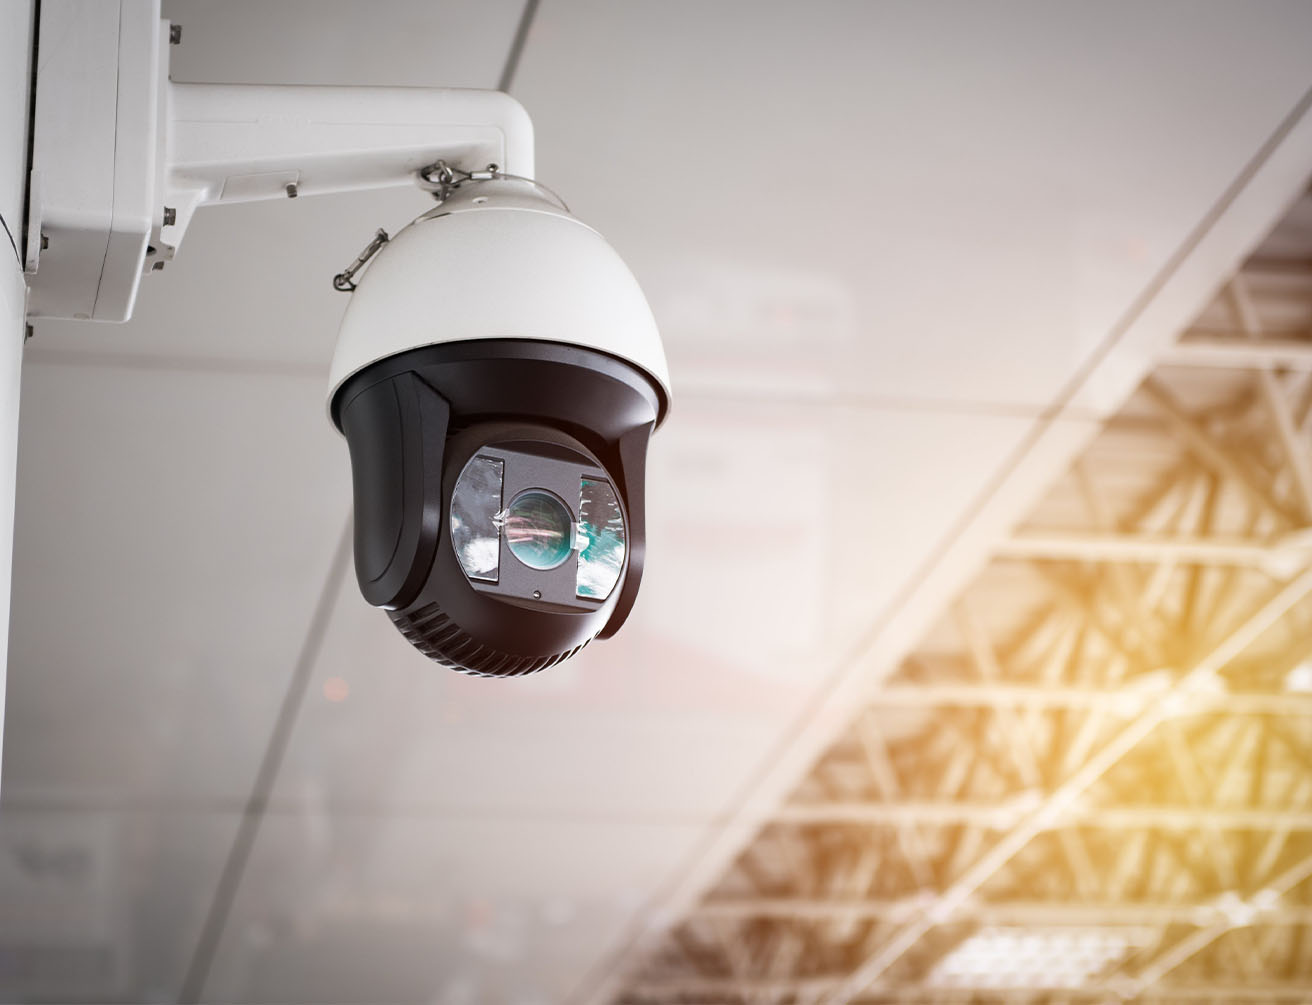 CCTV camera installation in Kerala | Iguard Solution